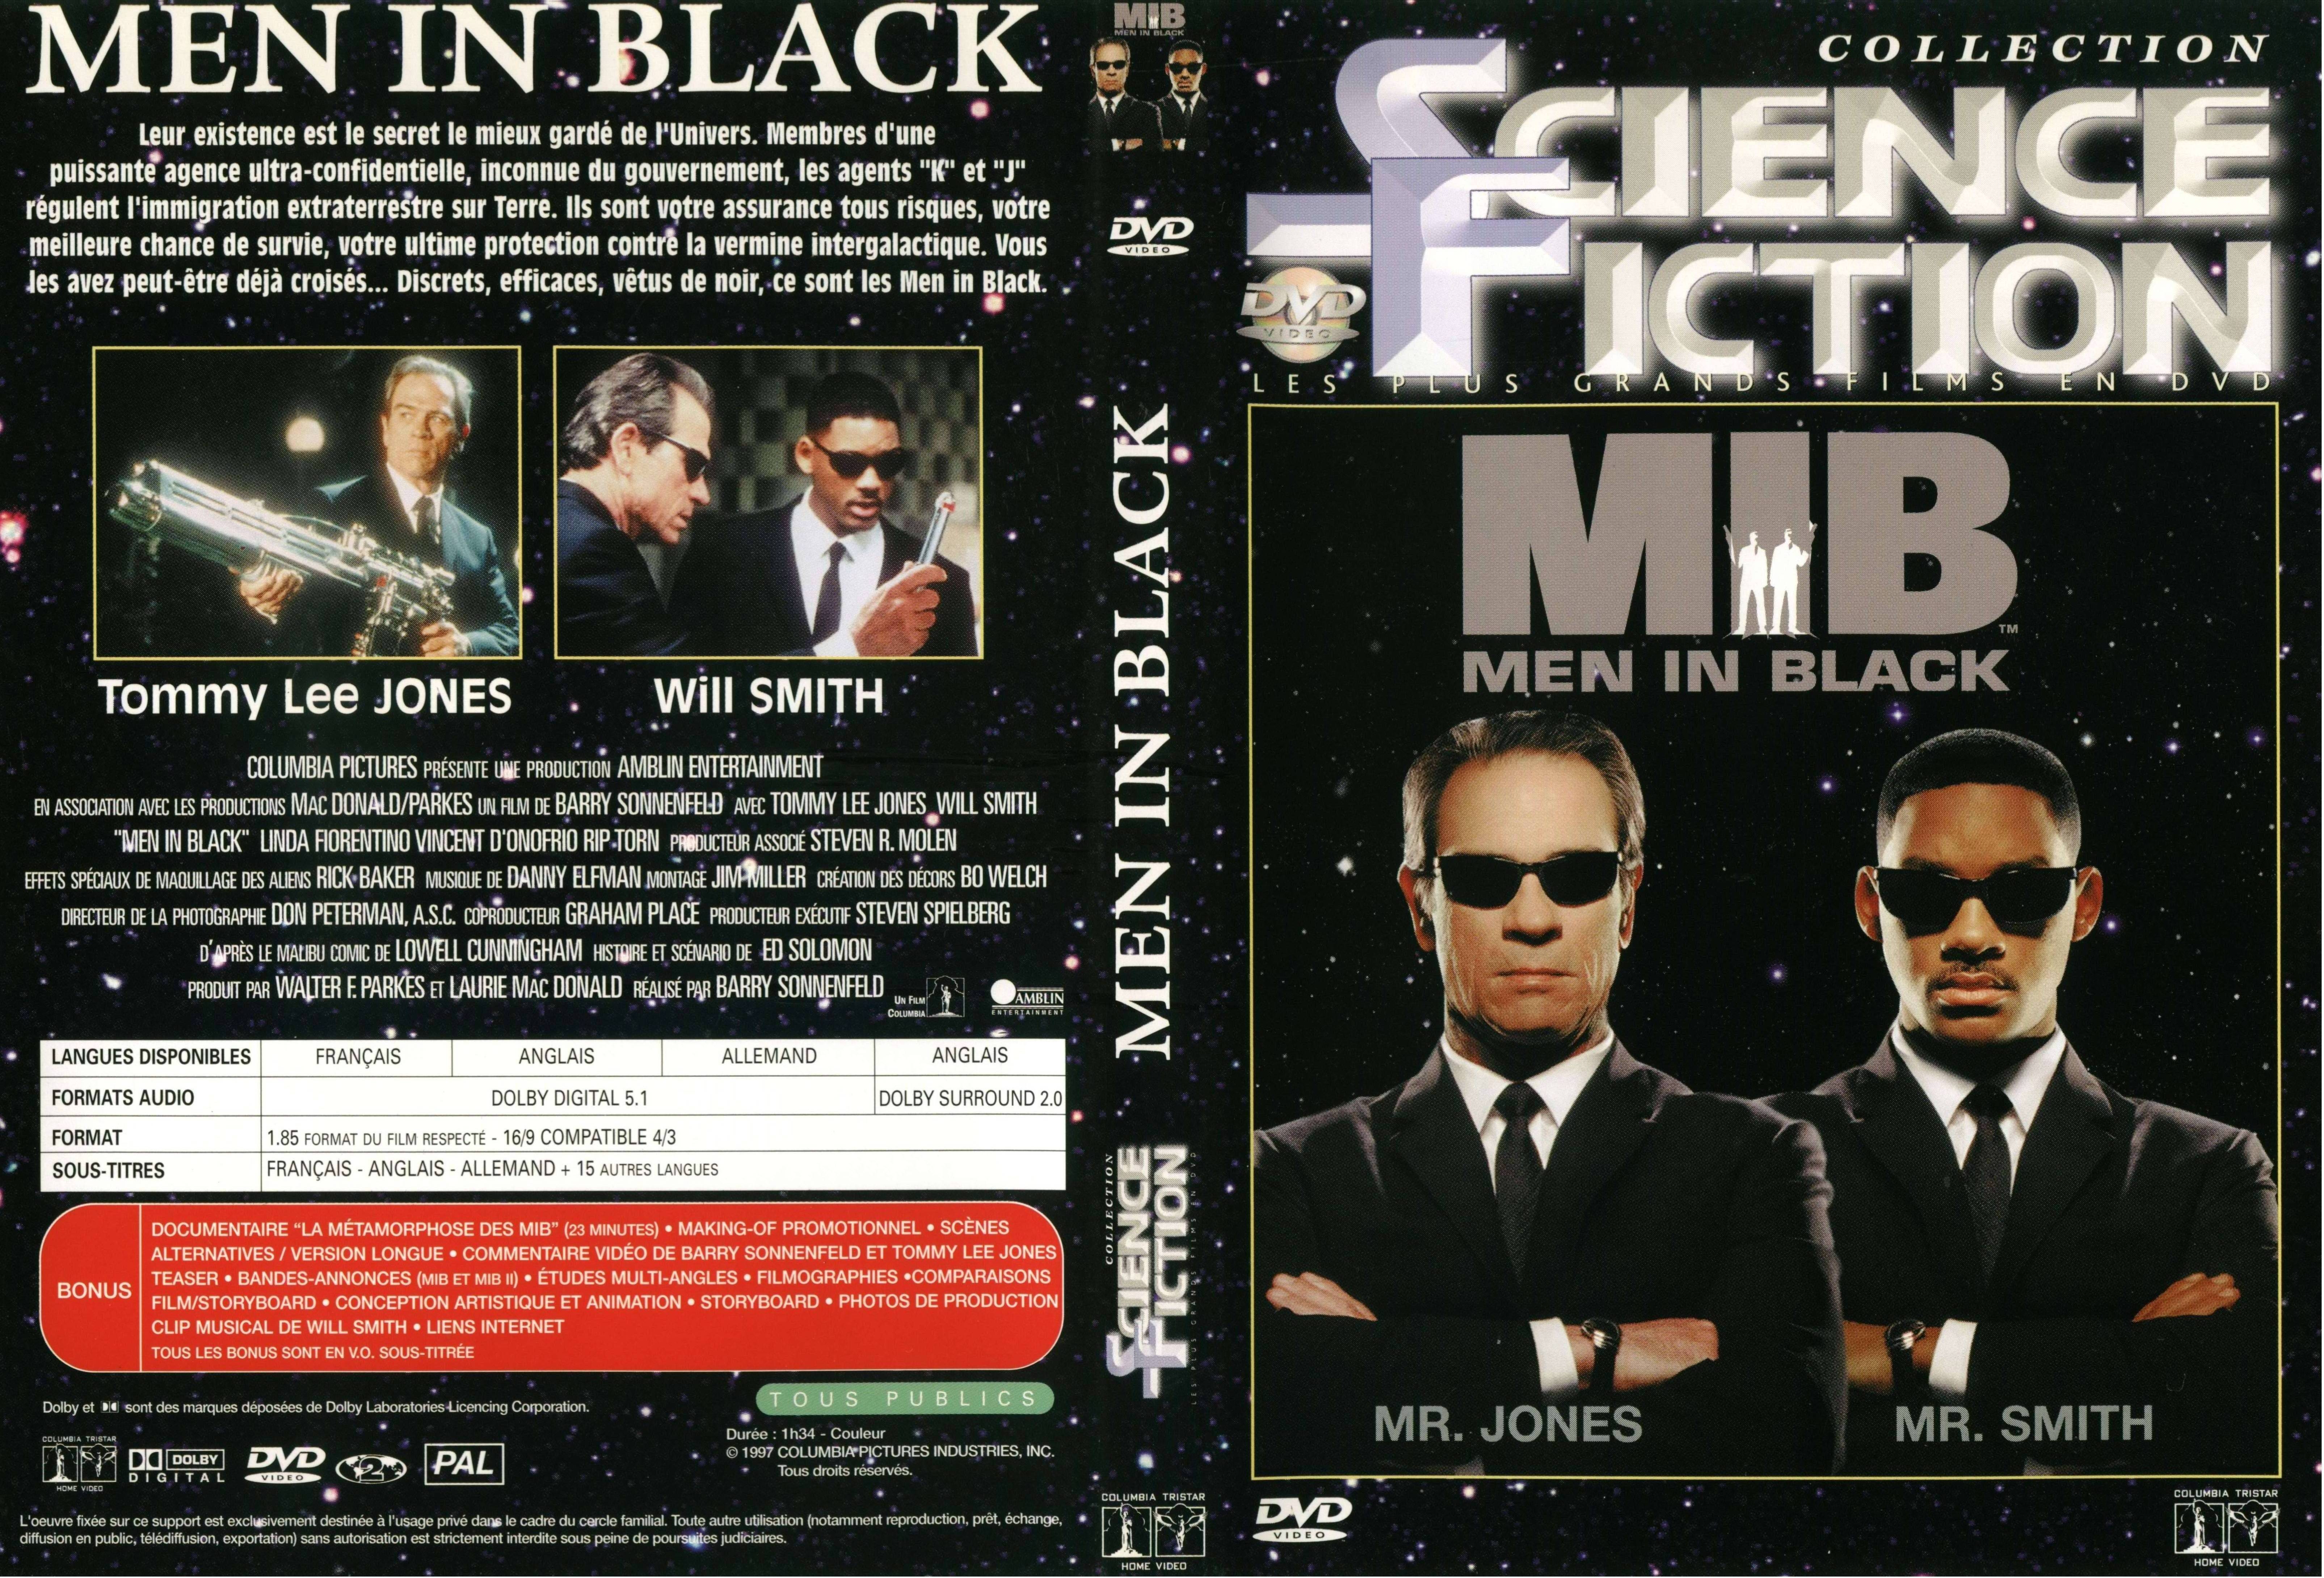 Jaquette DVD Men in black v3